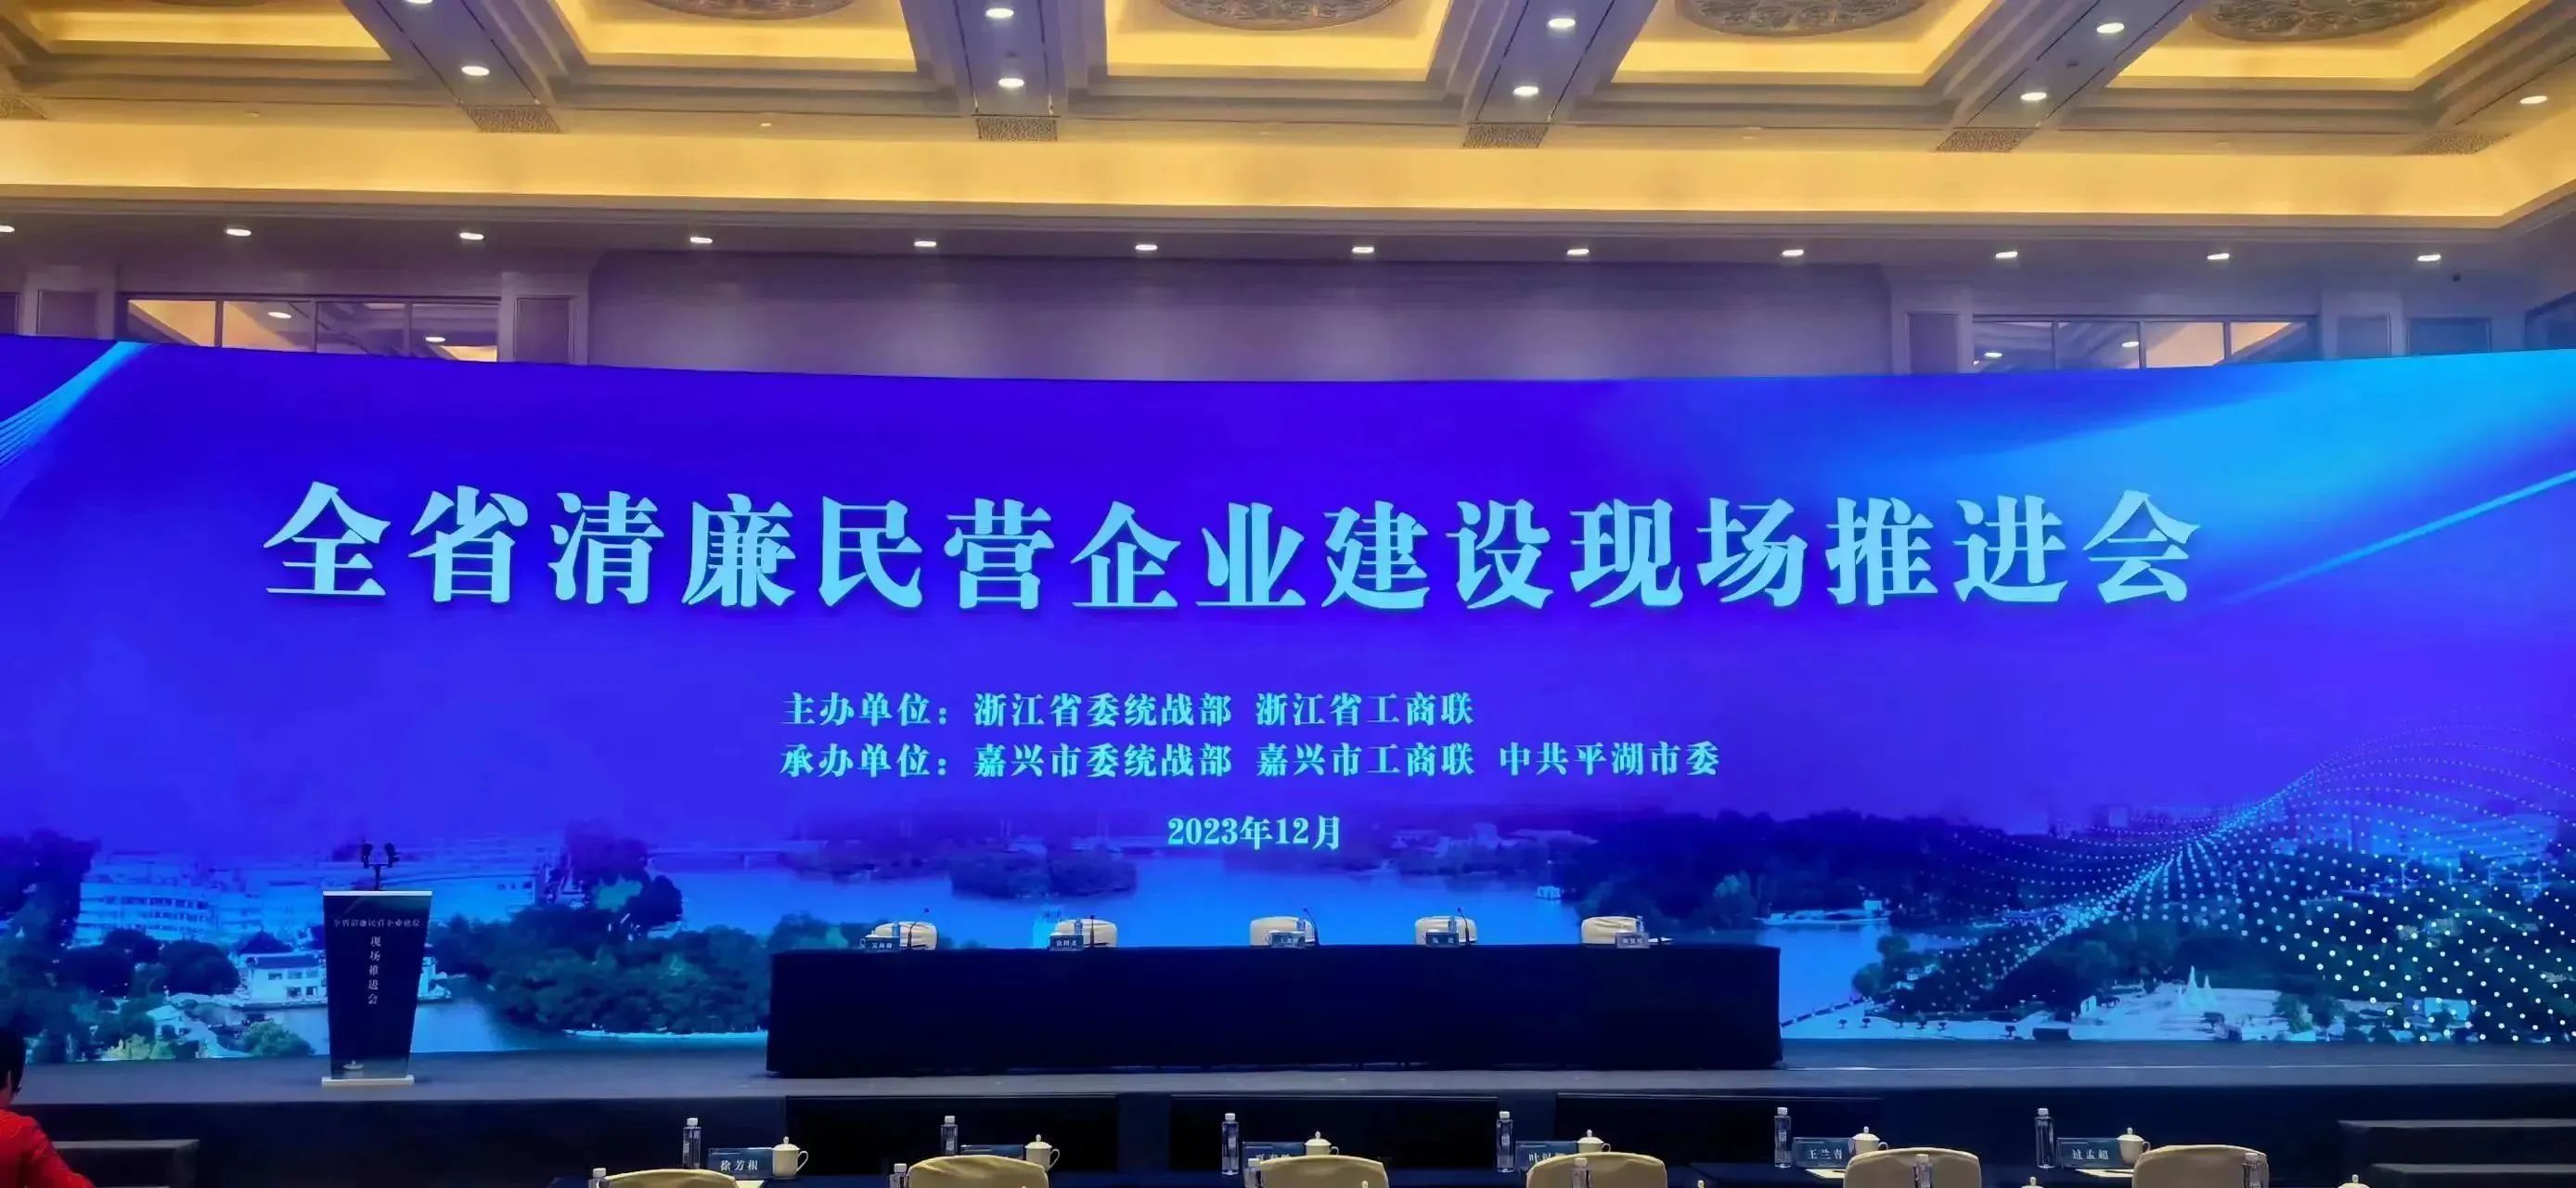 集团荣获2023年度浙江省清亷民企建设示范单位称号